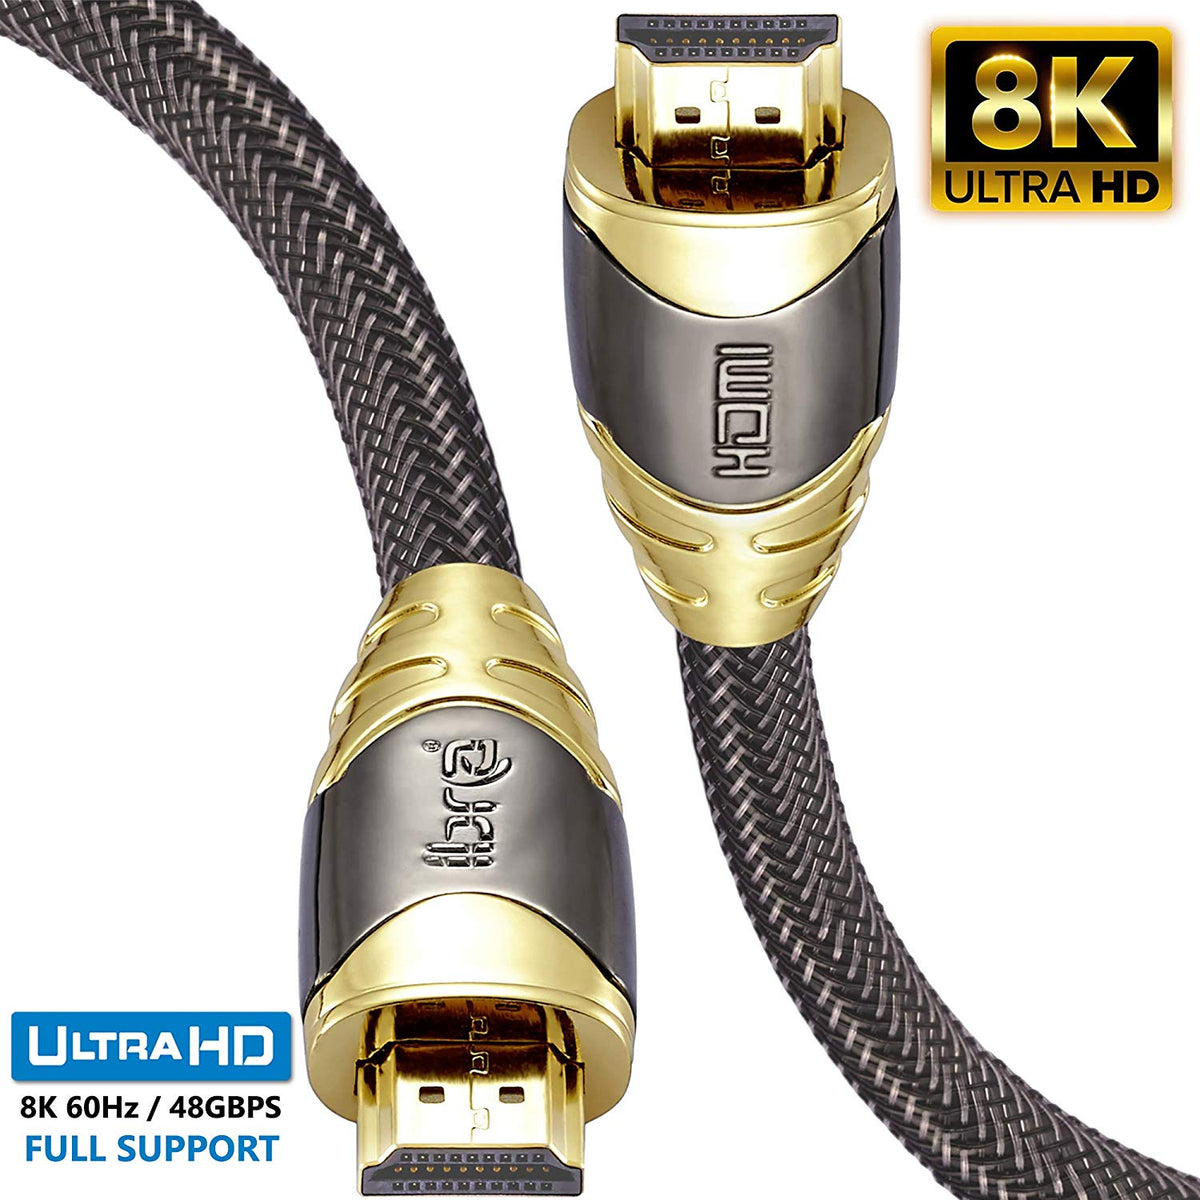 0.75M Premium 8K 2.1 HDMI cable - IBRA Luxury Series